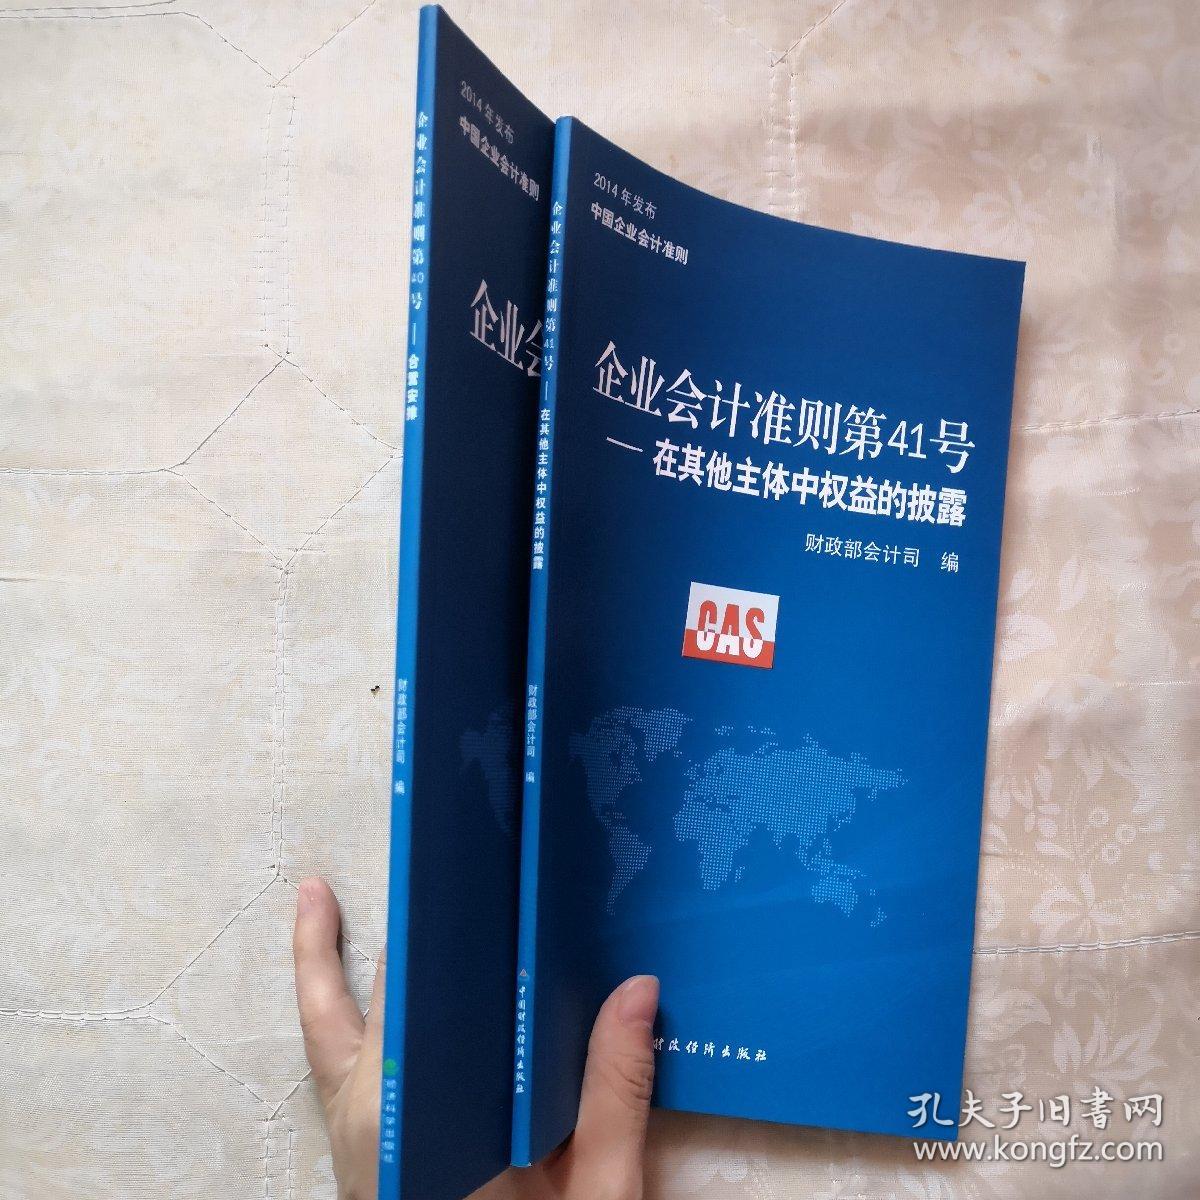 2014年发布中国企业会计准则 企业会计准则第40号——合营安排、第41号-在其他主体中权益的披露（两本合售）